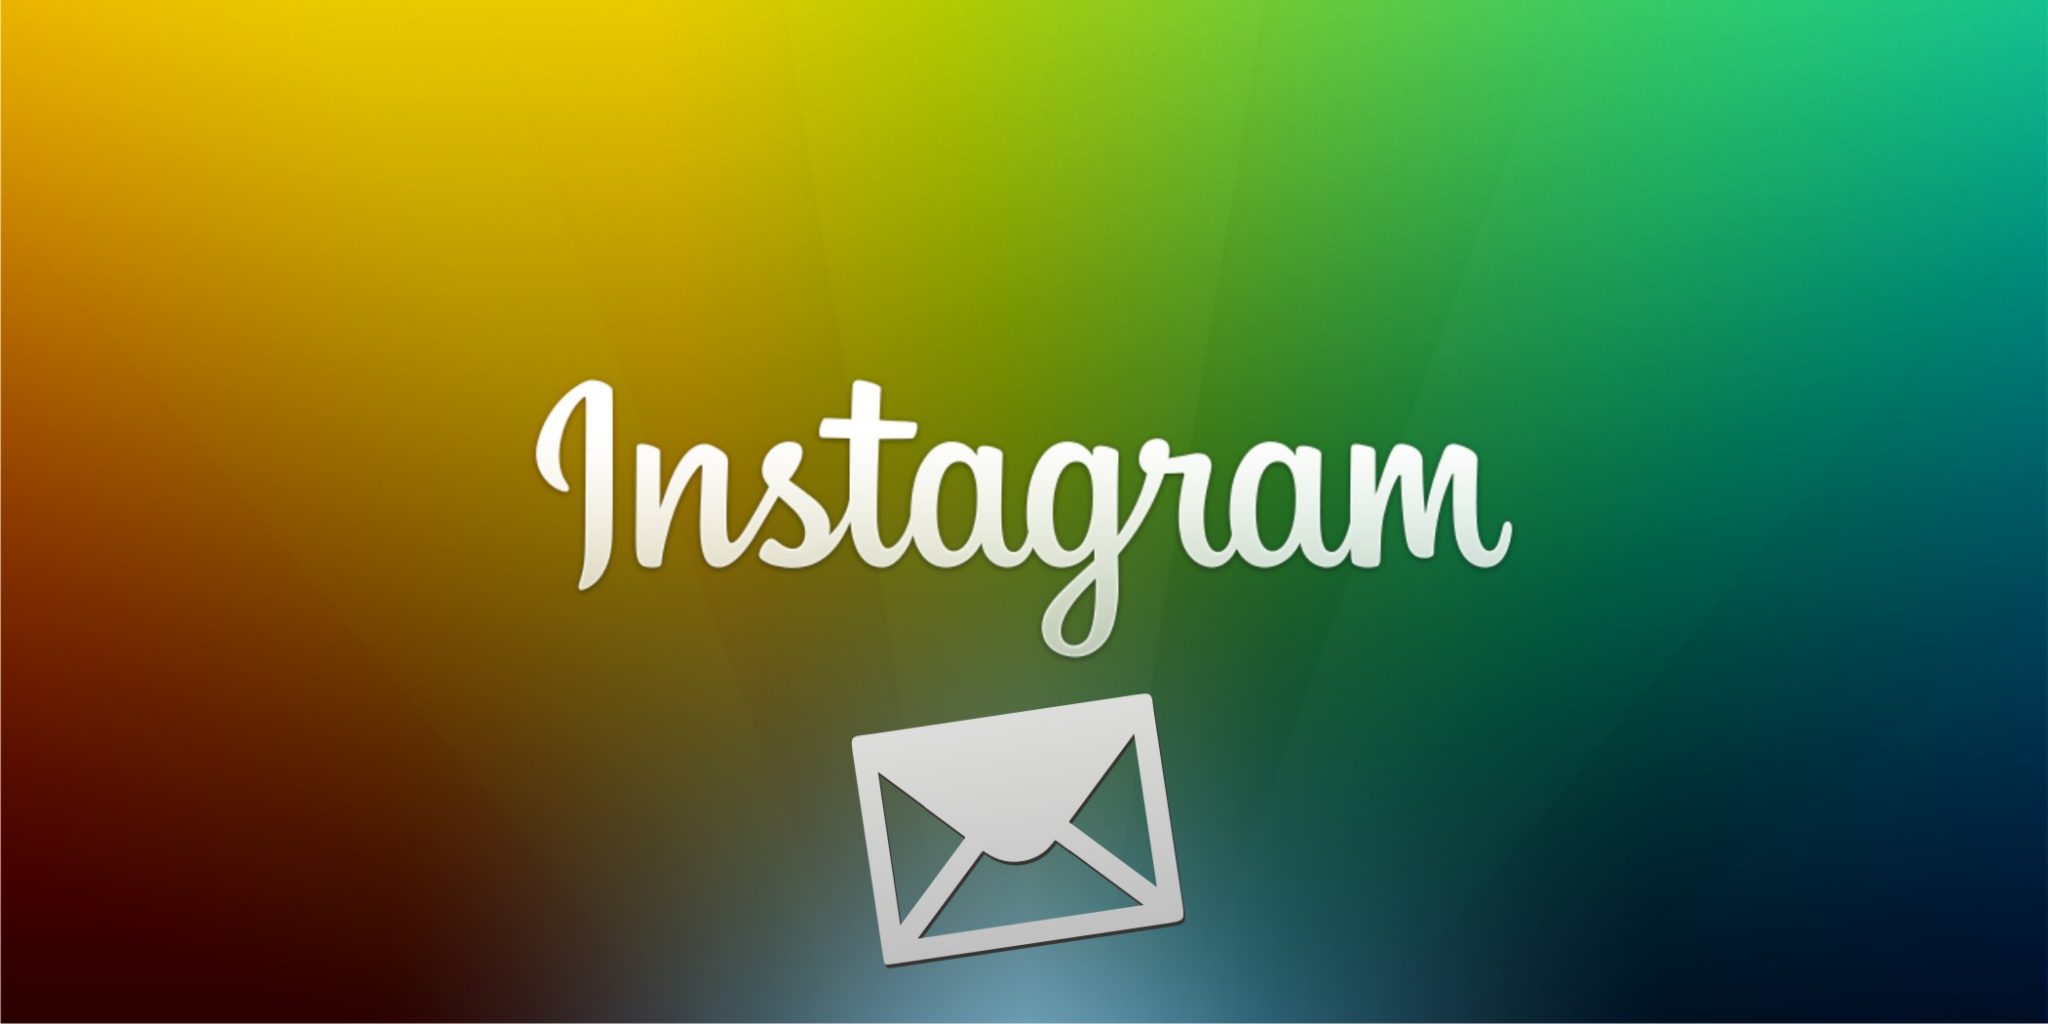 Următorul pas pe Instagram să fie oare Private Messaging ?